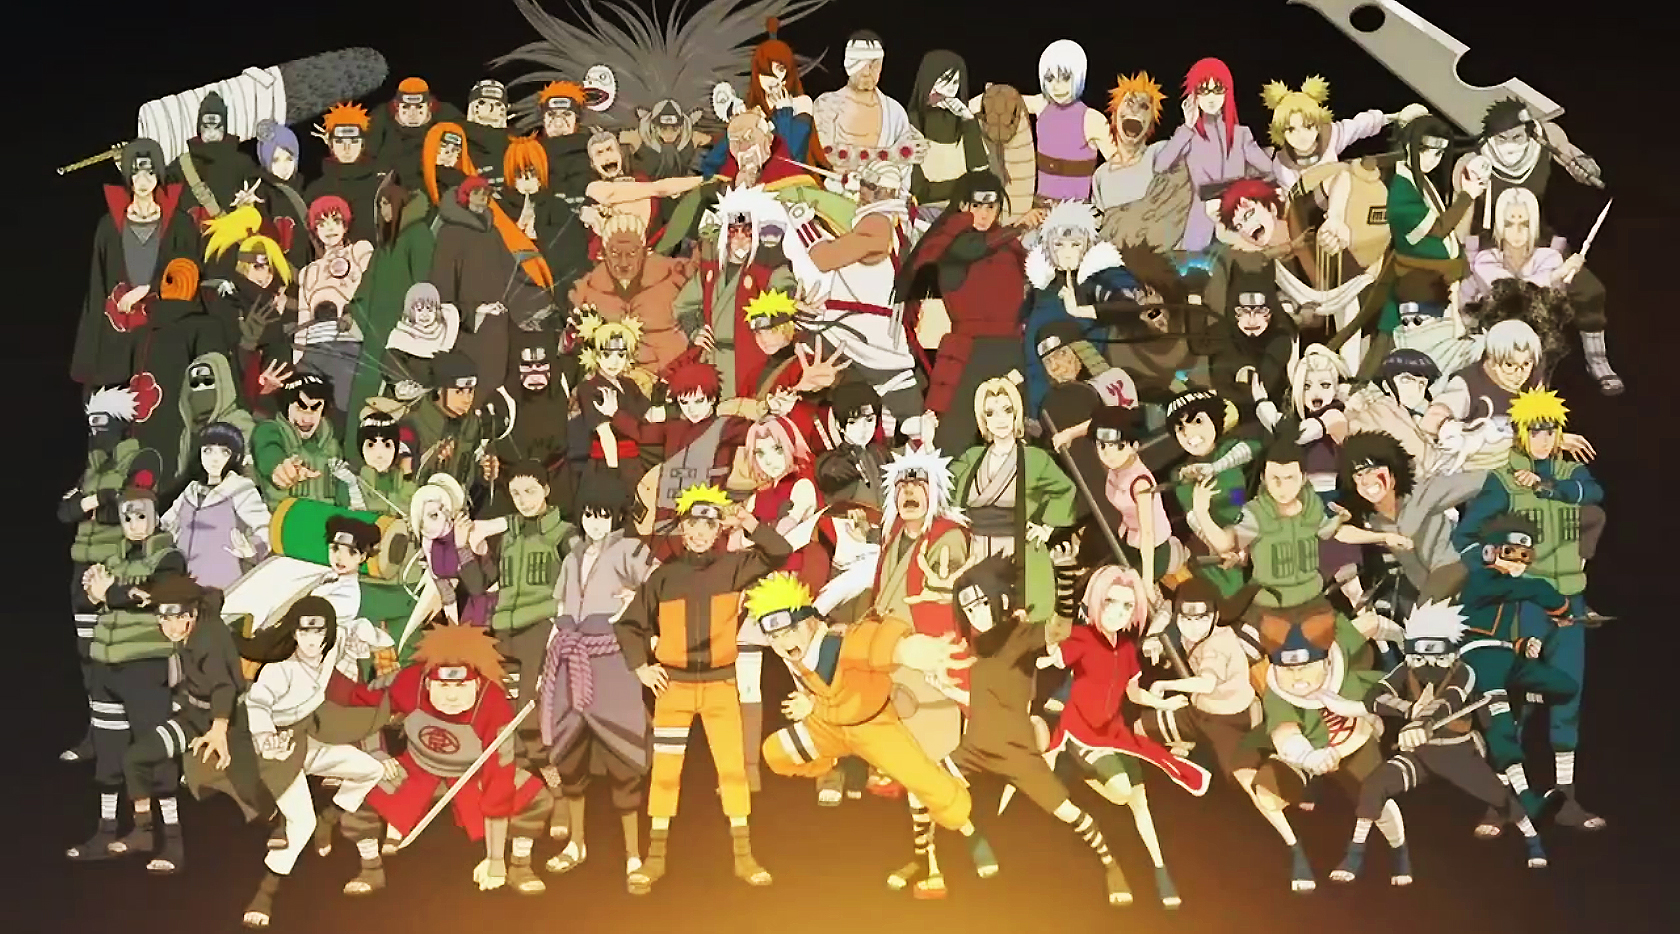 alle anime wallpaper hd,menschen,soziale gruppe,menge,karikatur,gemeinschaft